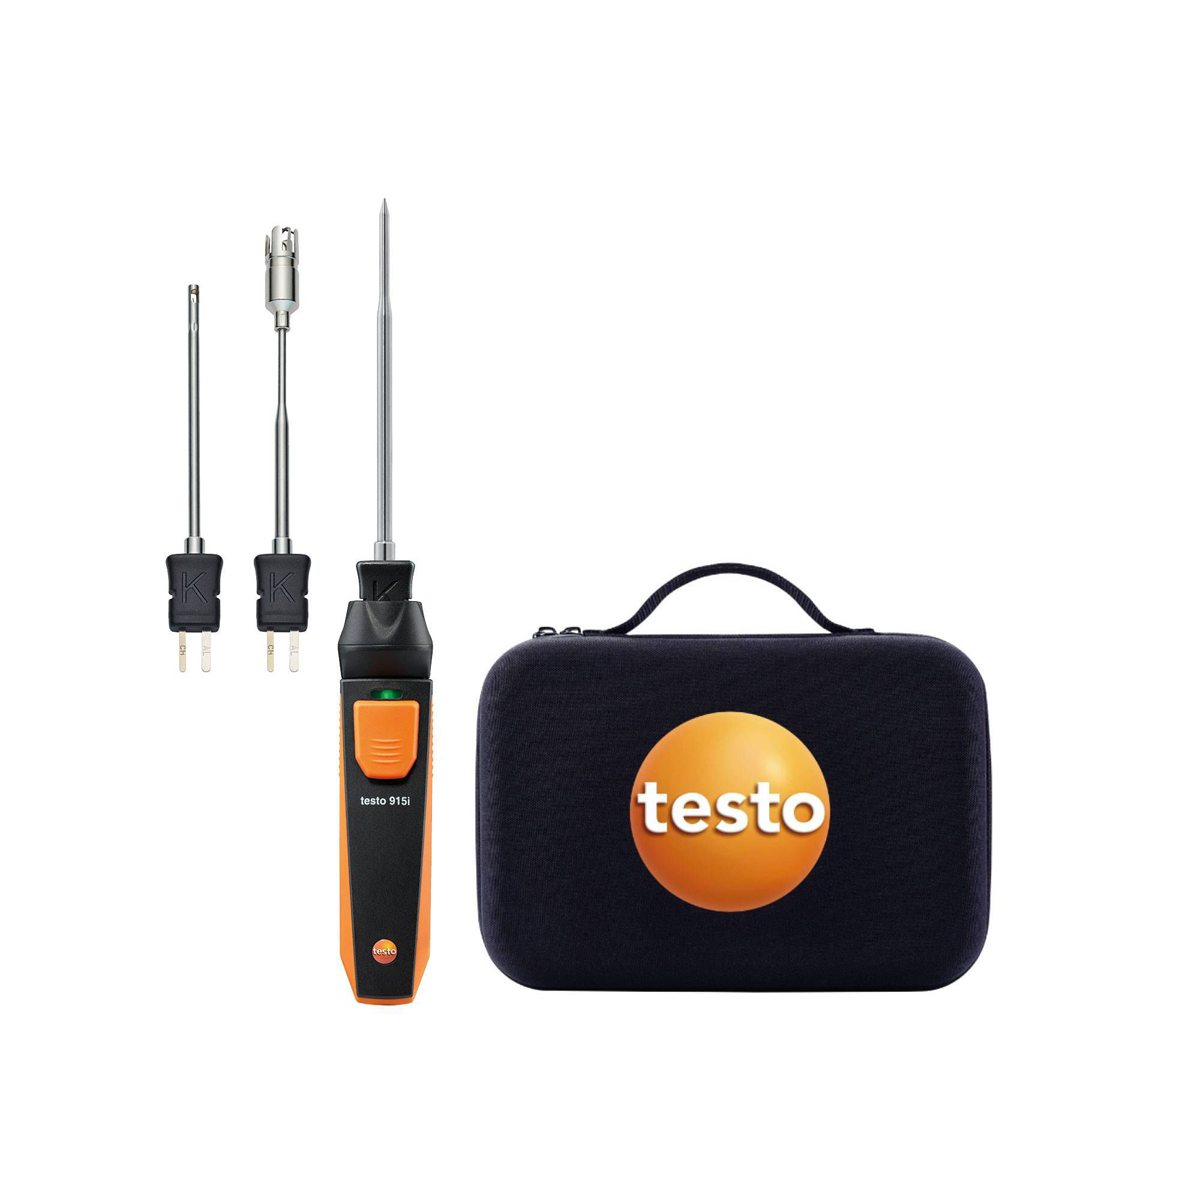 Testo 915 i - Temperatur-Set mit Temperaturfühlern - 0563 5915